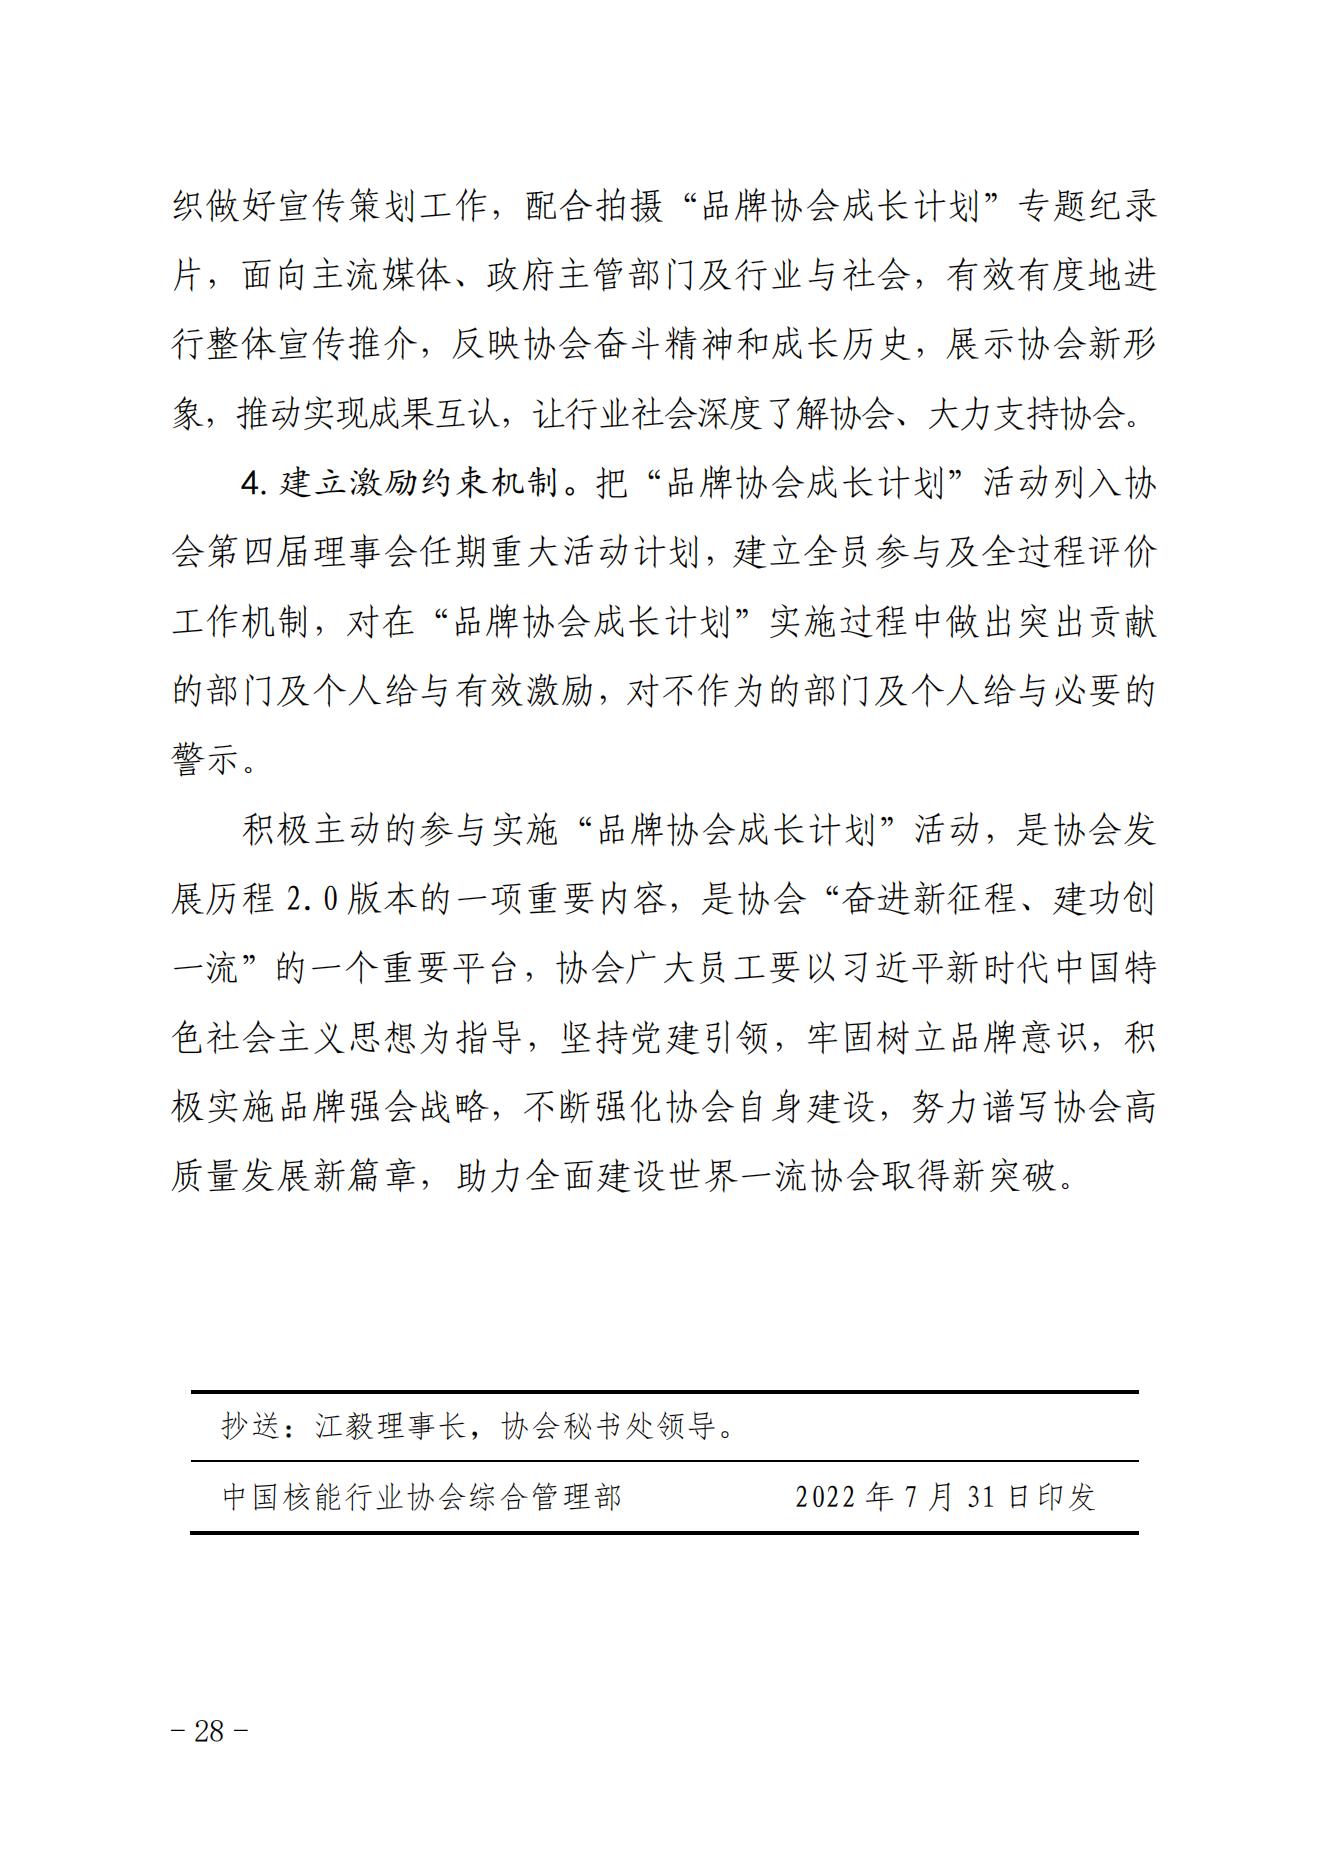 关于印发《中国核能行业协会“品牌协会成长计划”实施方案》的通知_27.jpg